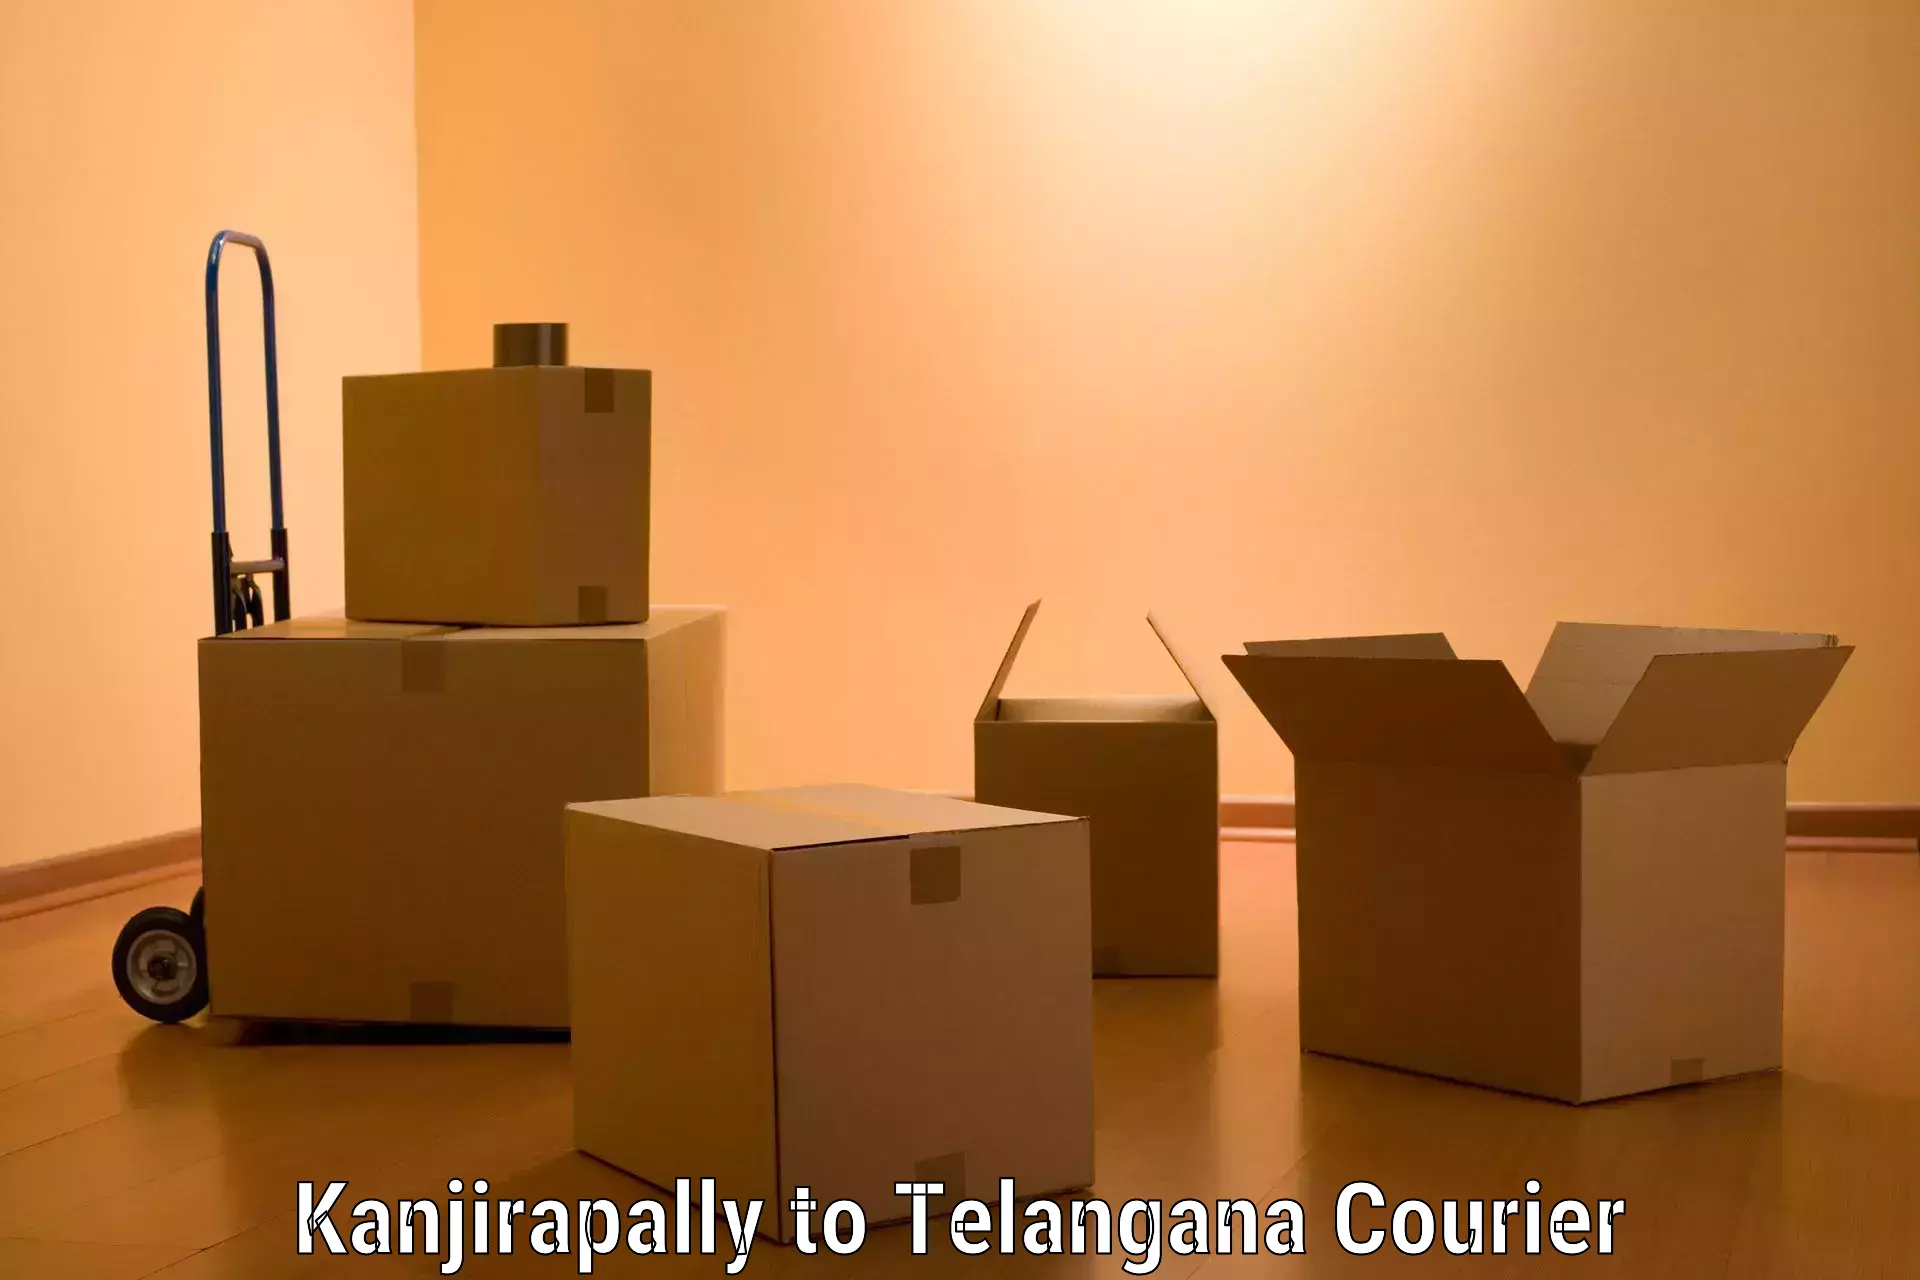 Trusted moving company Kanjirapally to Yellareddy